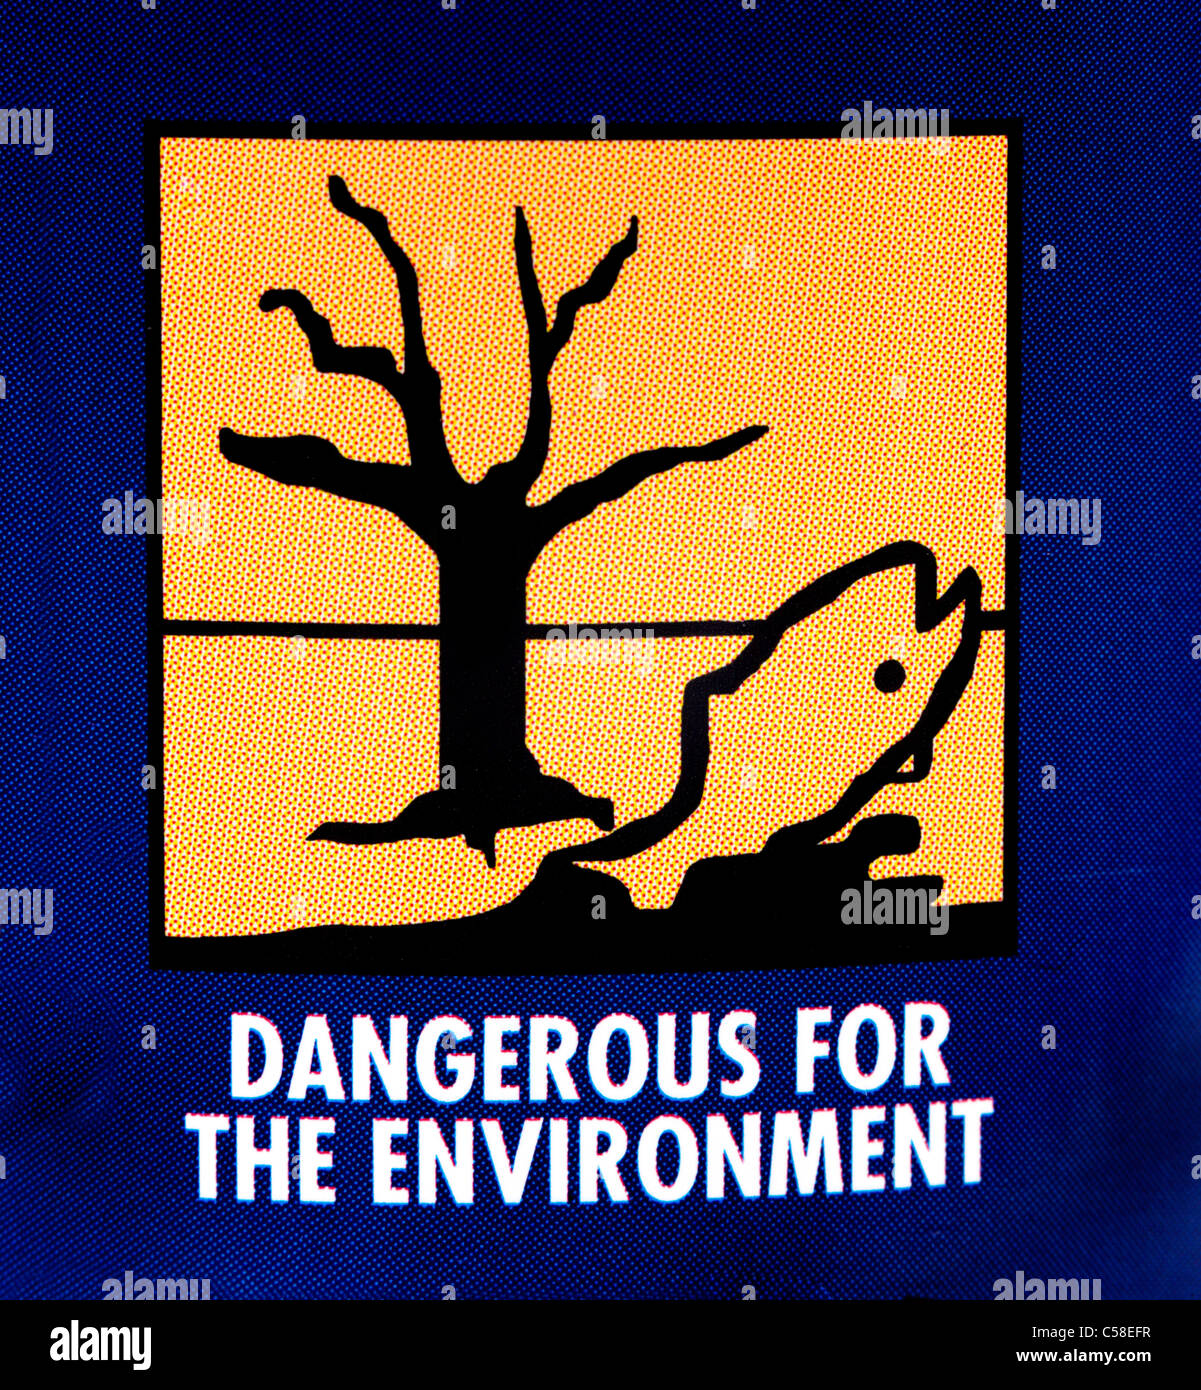 Peligroso para el Medio Ambiente, la etiqueta de advertencia en la cola Foto de stock